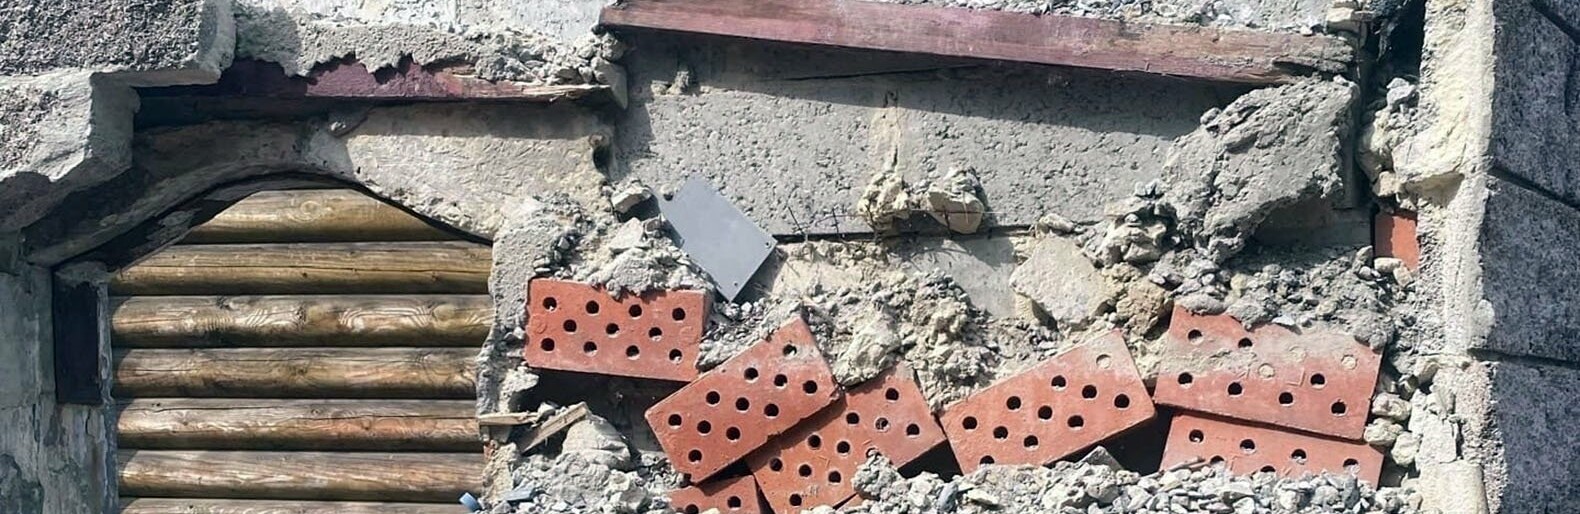 Прокуратура начала проверку после обрушения стены на детской площадке в Белгороде на семилетнего мальчика